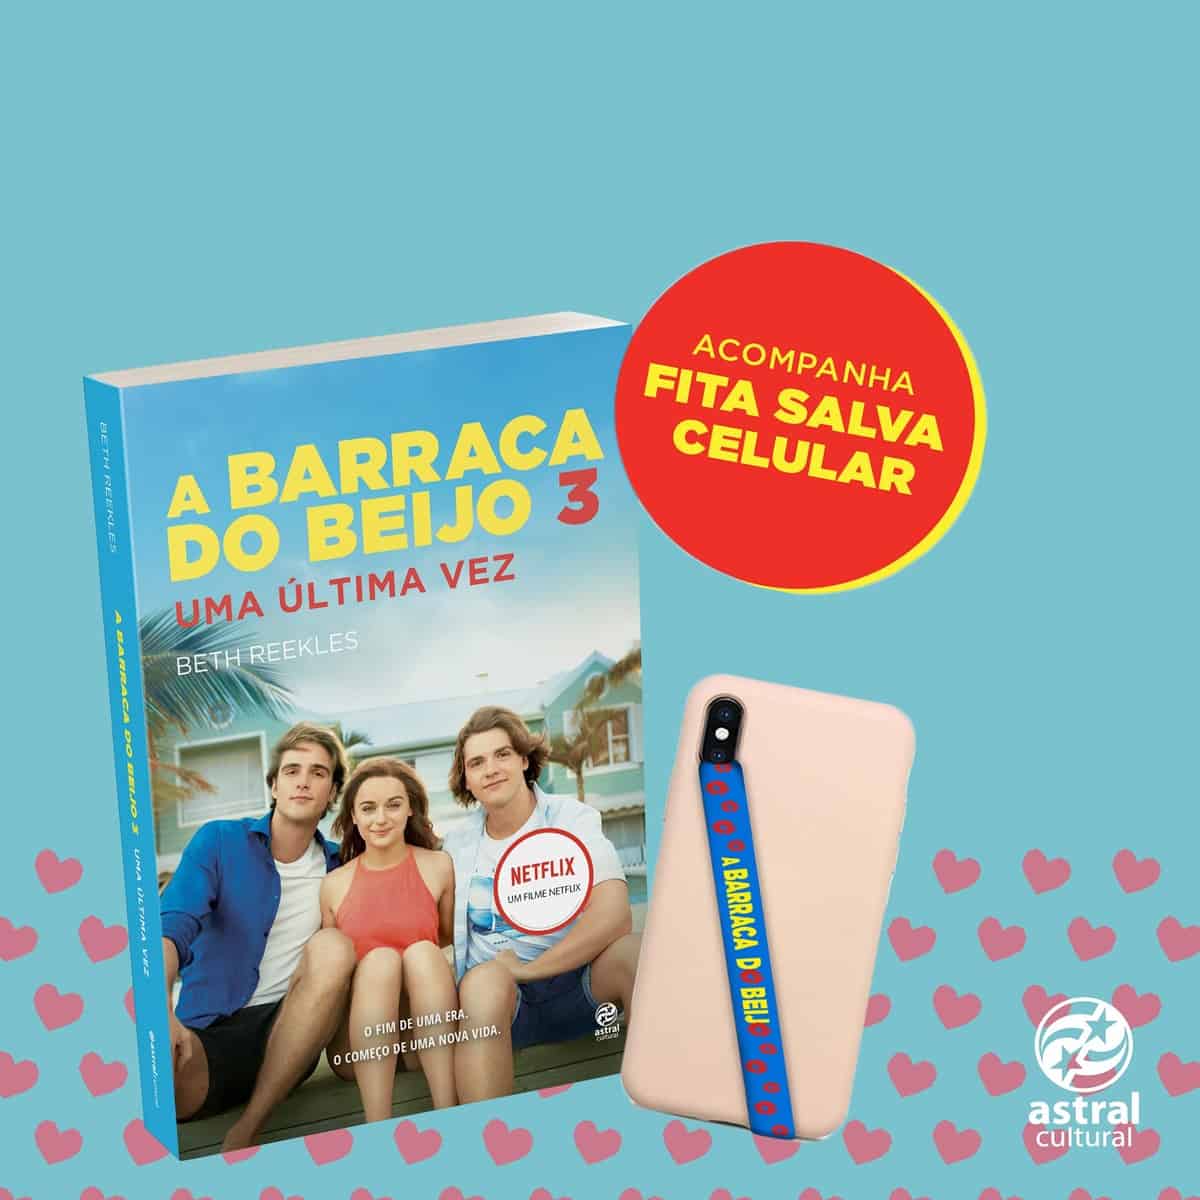 A Barraca do Beijo 3: livro do filme será lançado no Brasil em agosto